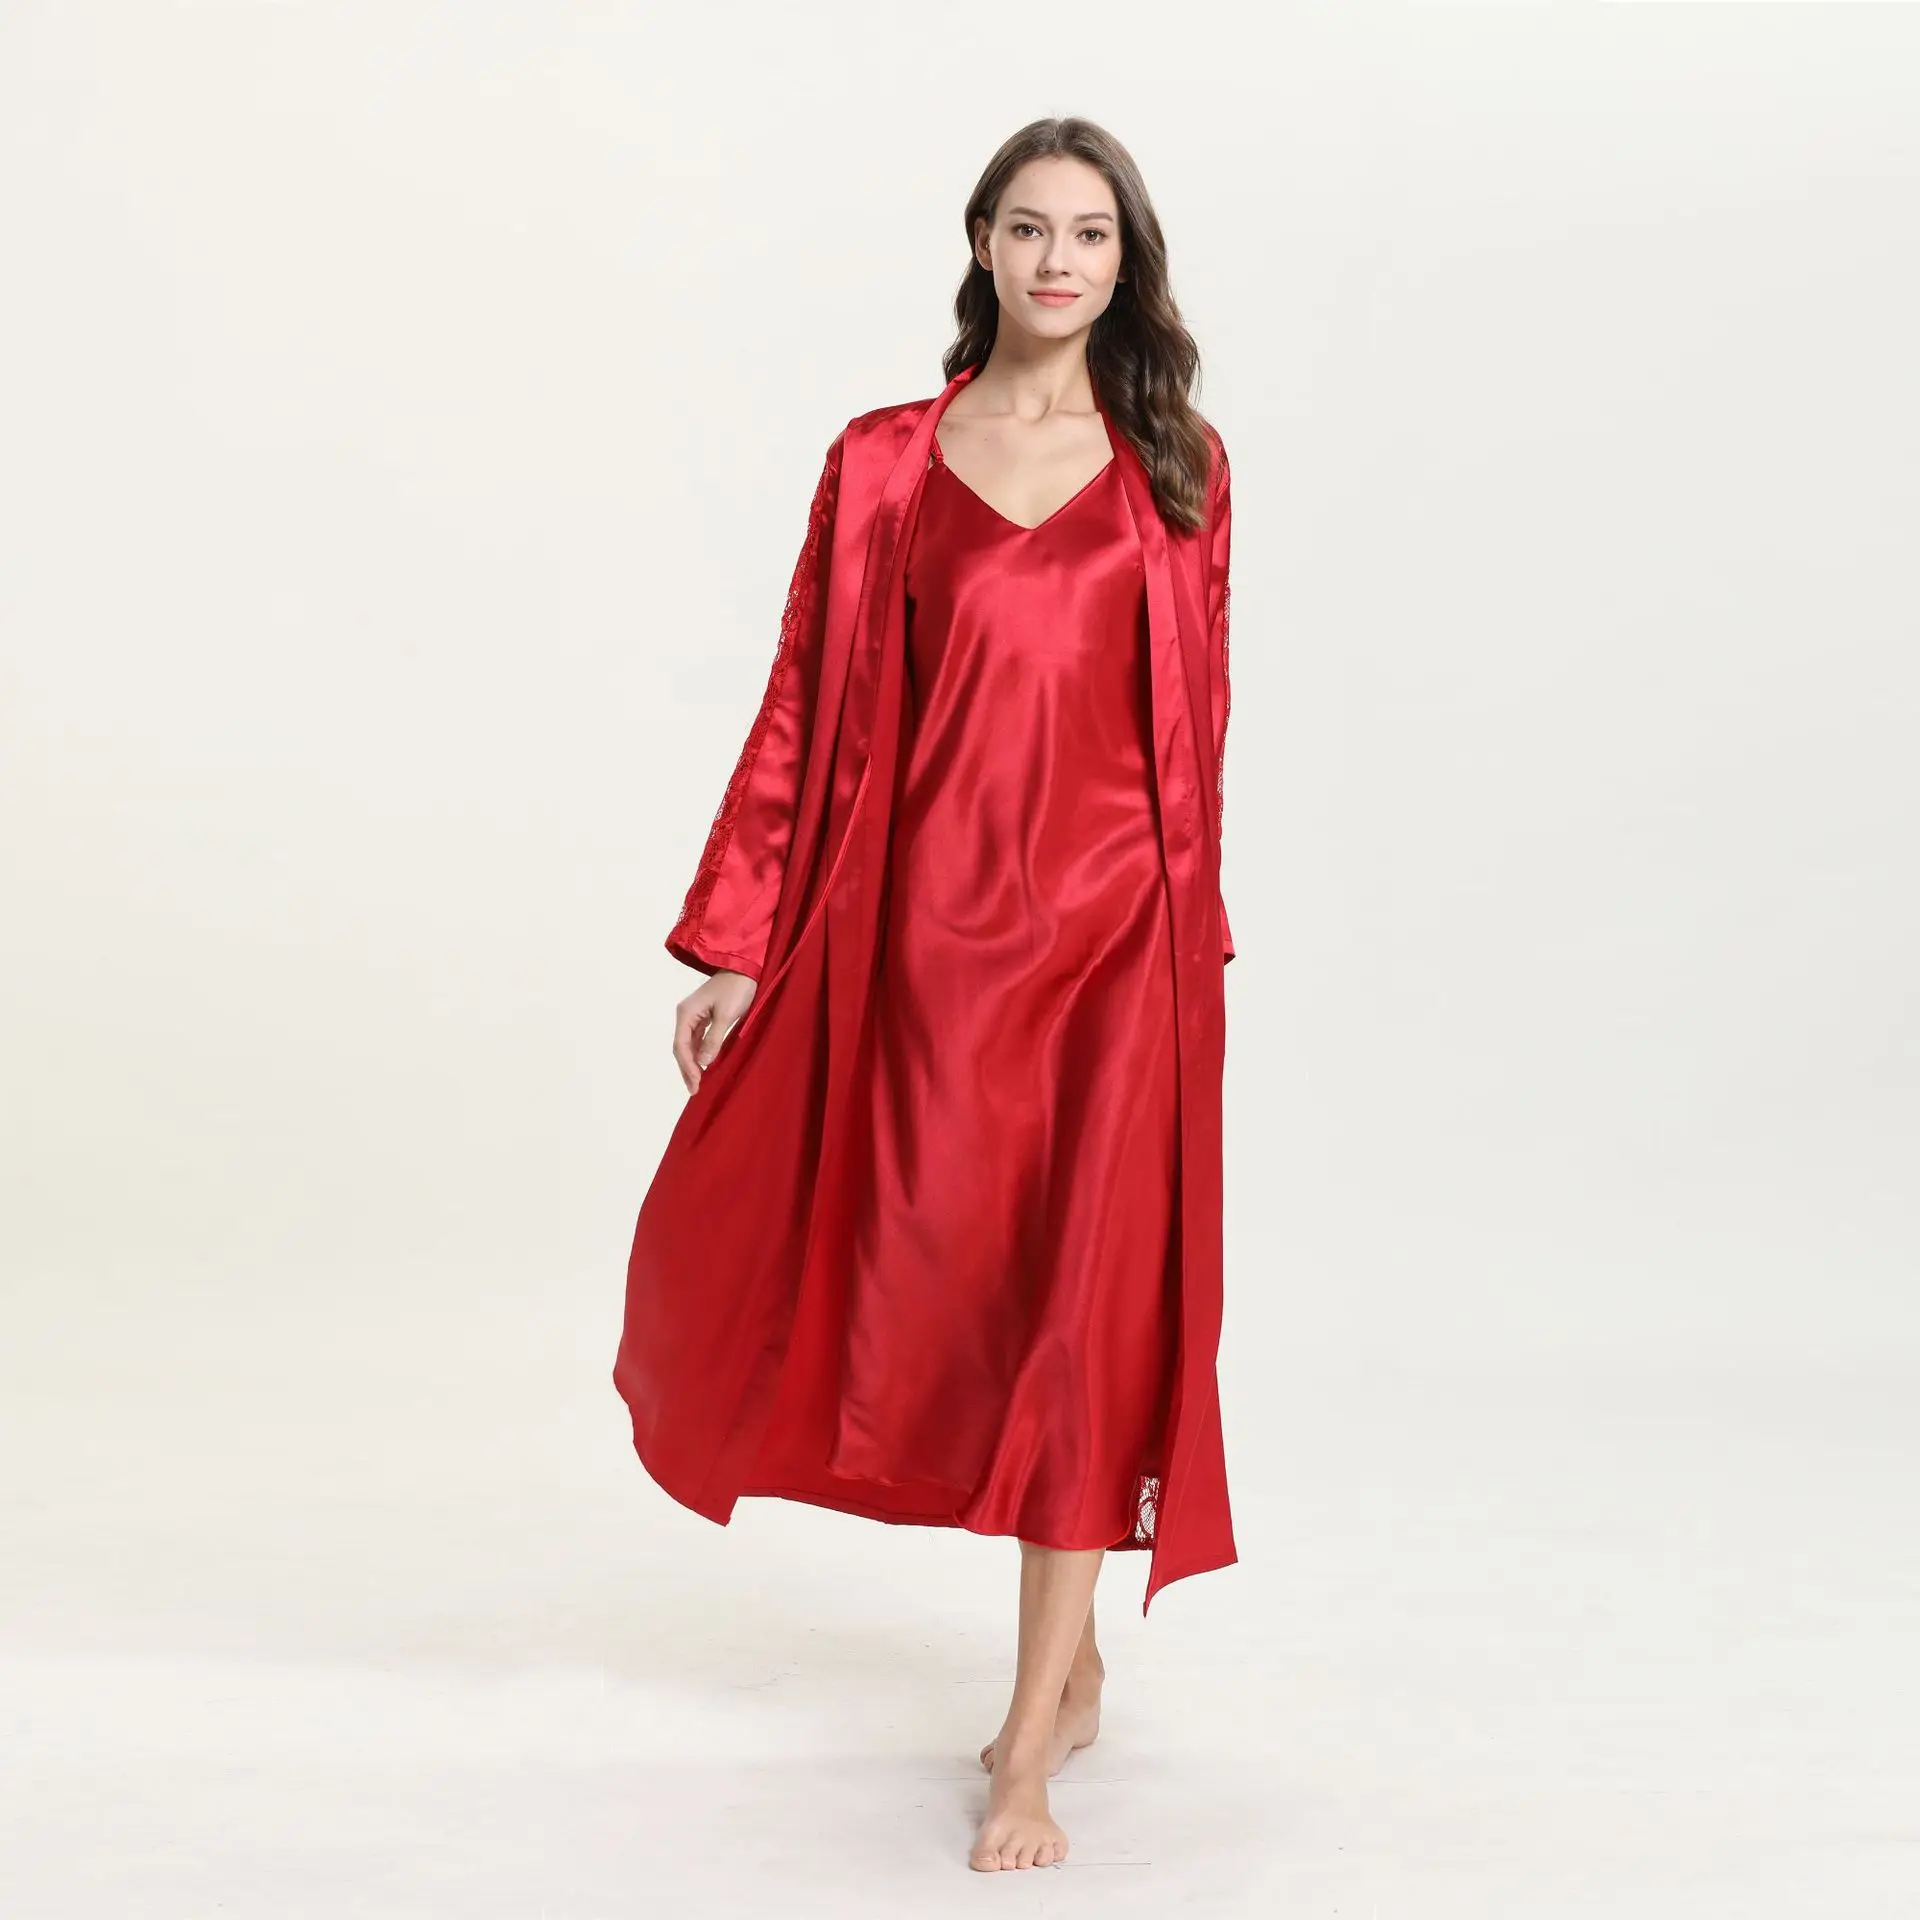 QWEEK 2019 красный набор женских халатов сексуальное платье с v-образным воротом, платье из атласа пижамы шелковая ночная рубашка длинное